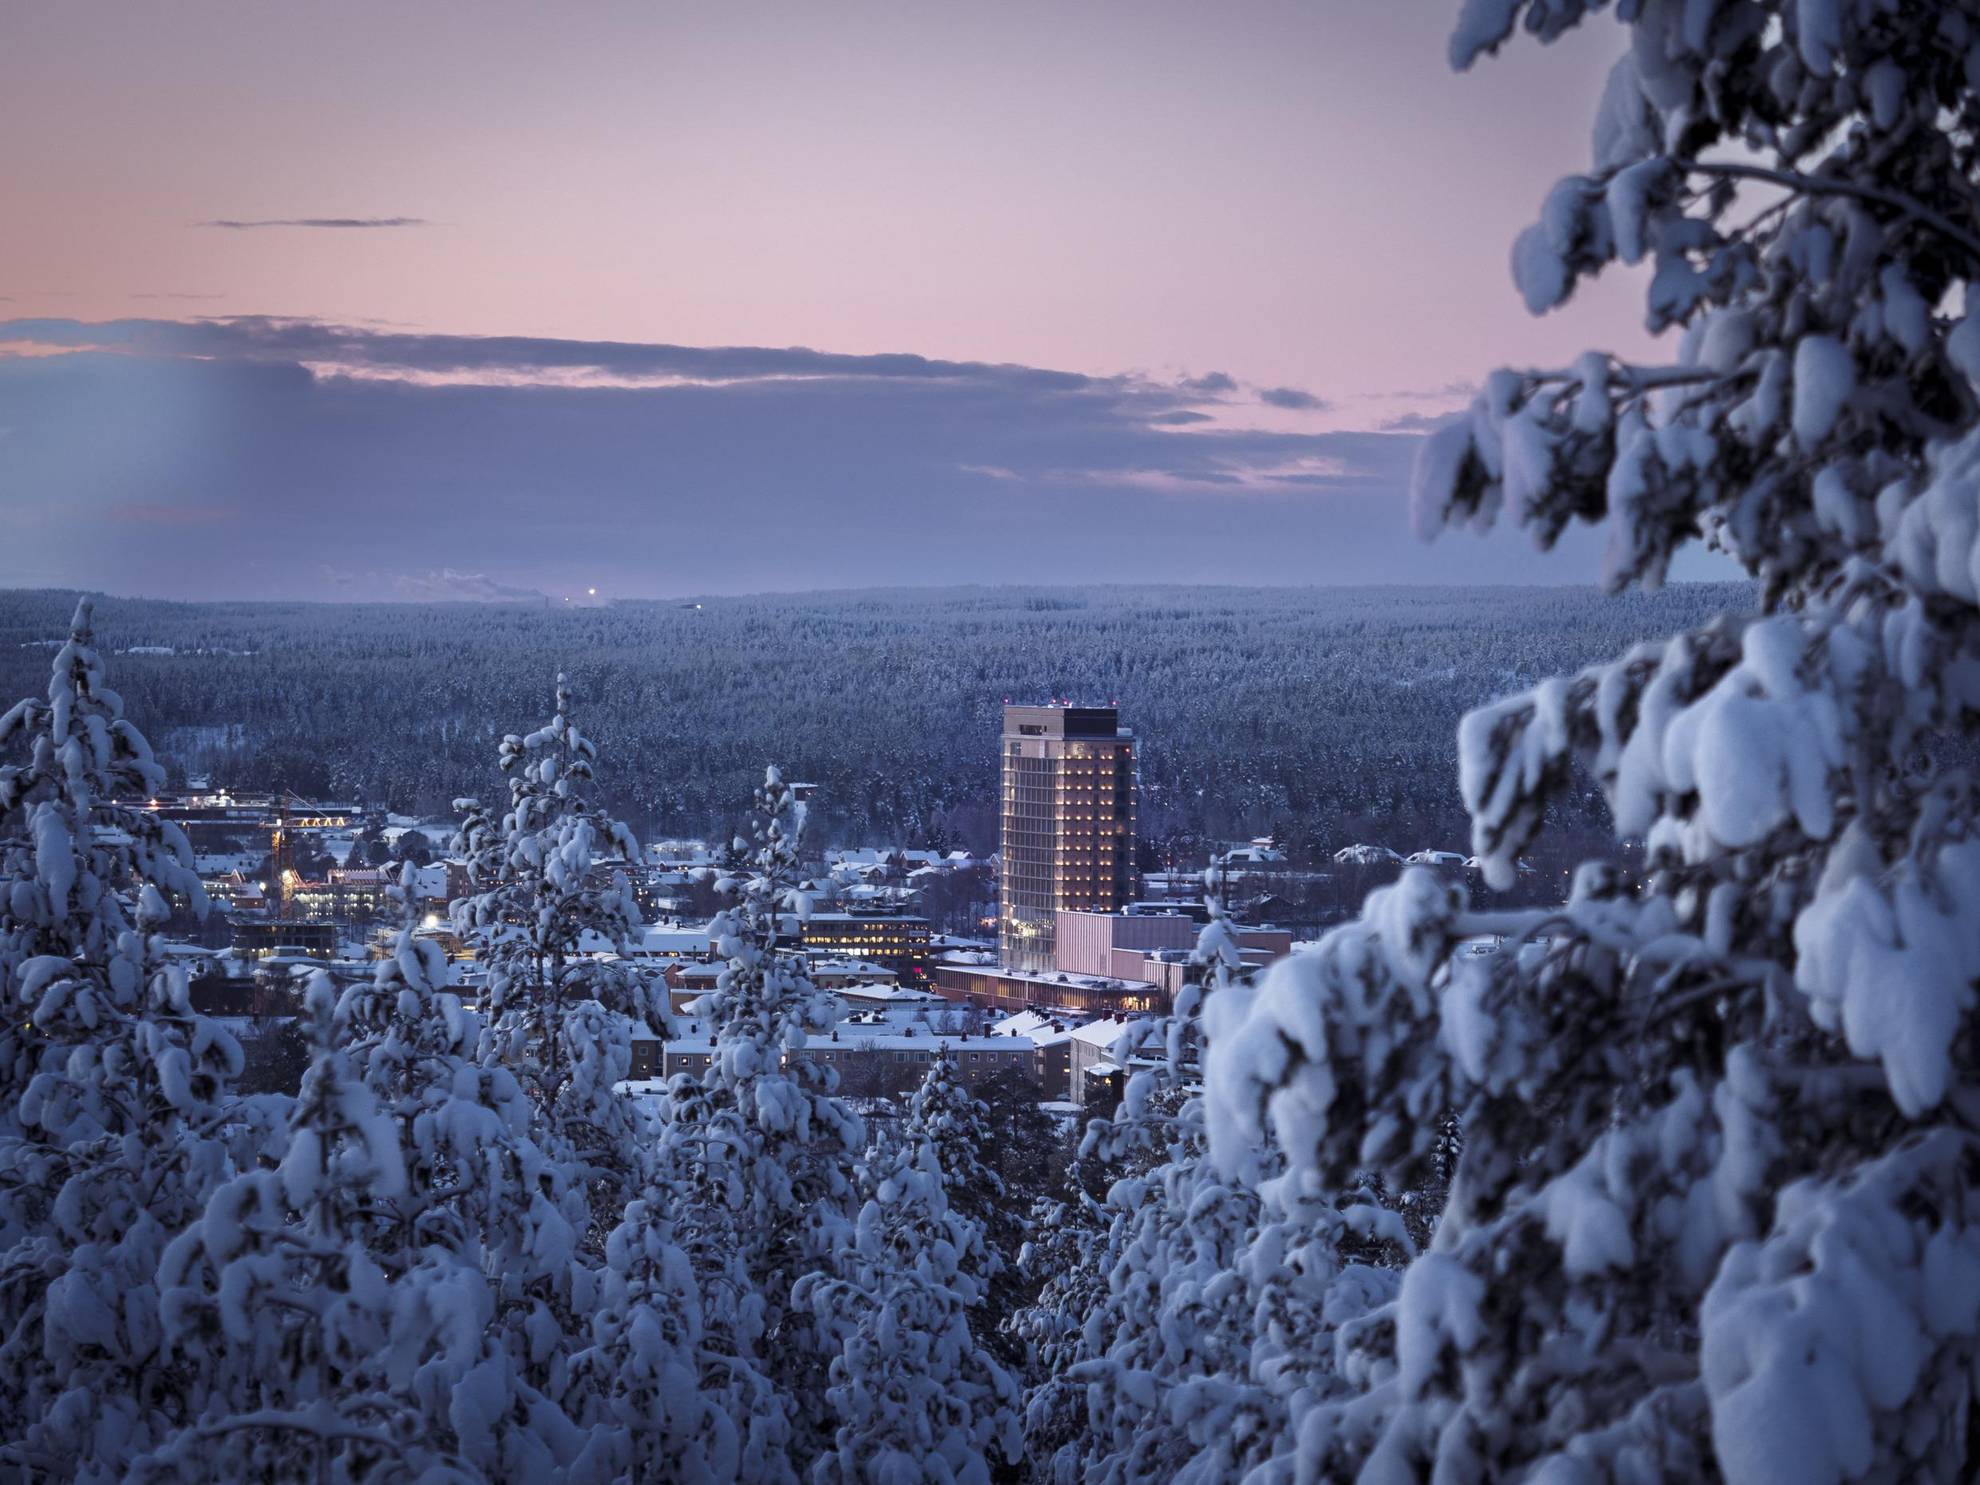 Eine schneebedeckte Stadt, umgeben von Bäumen, ist von weitem zu sehen. Das Wood Hotel ist das höchste Gebäude der Stadt.